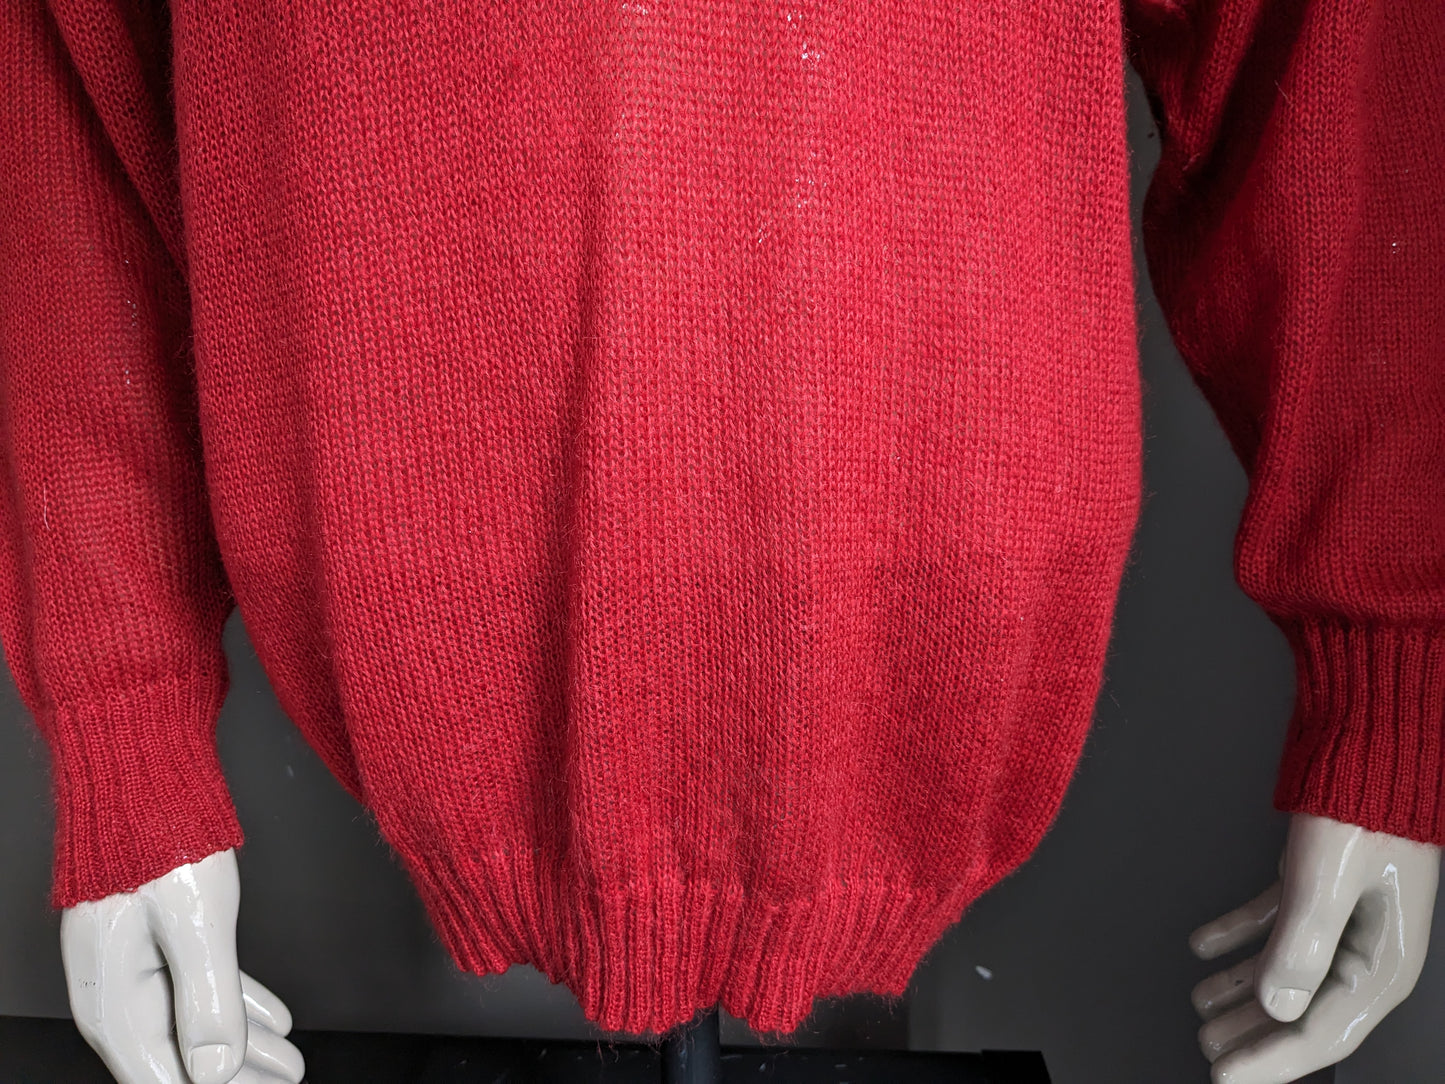 Vintage März Mohair Wollen trui. Rood gekleurd met applicatie voorkant. Maat XL.